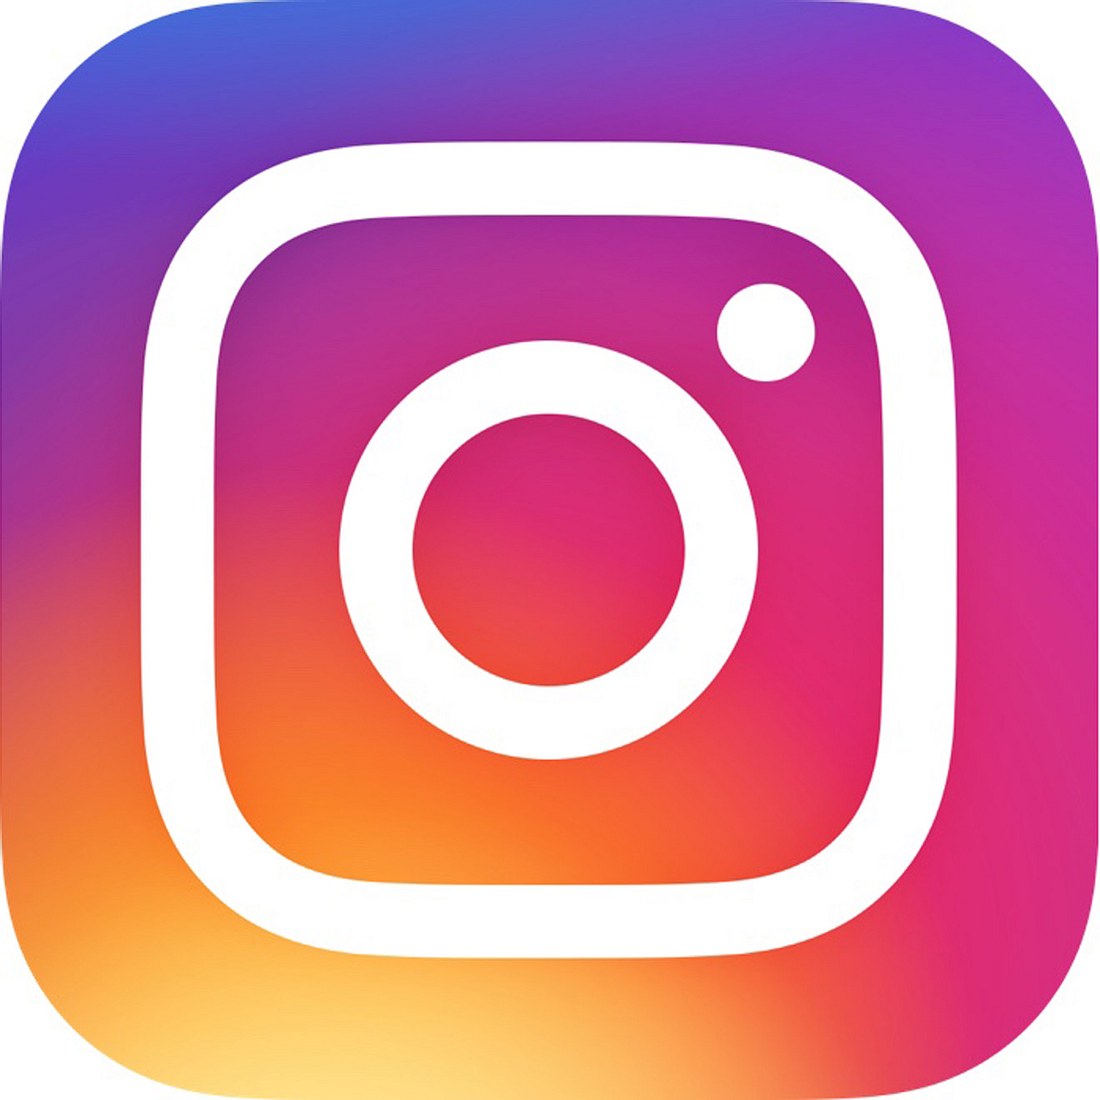 Instagram arbeitet an neuem Design